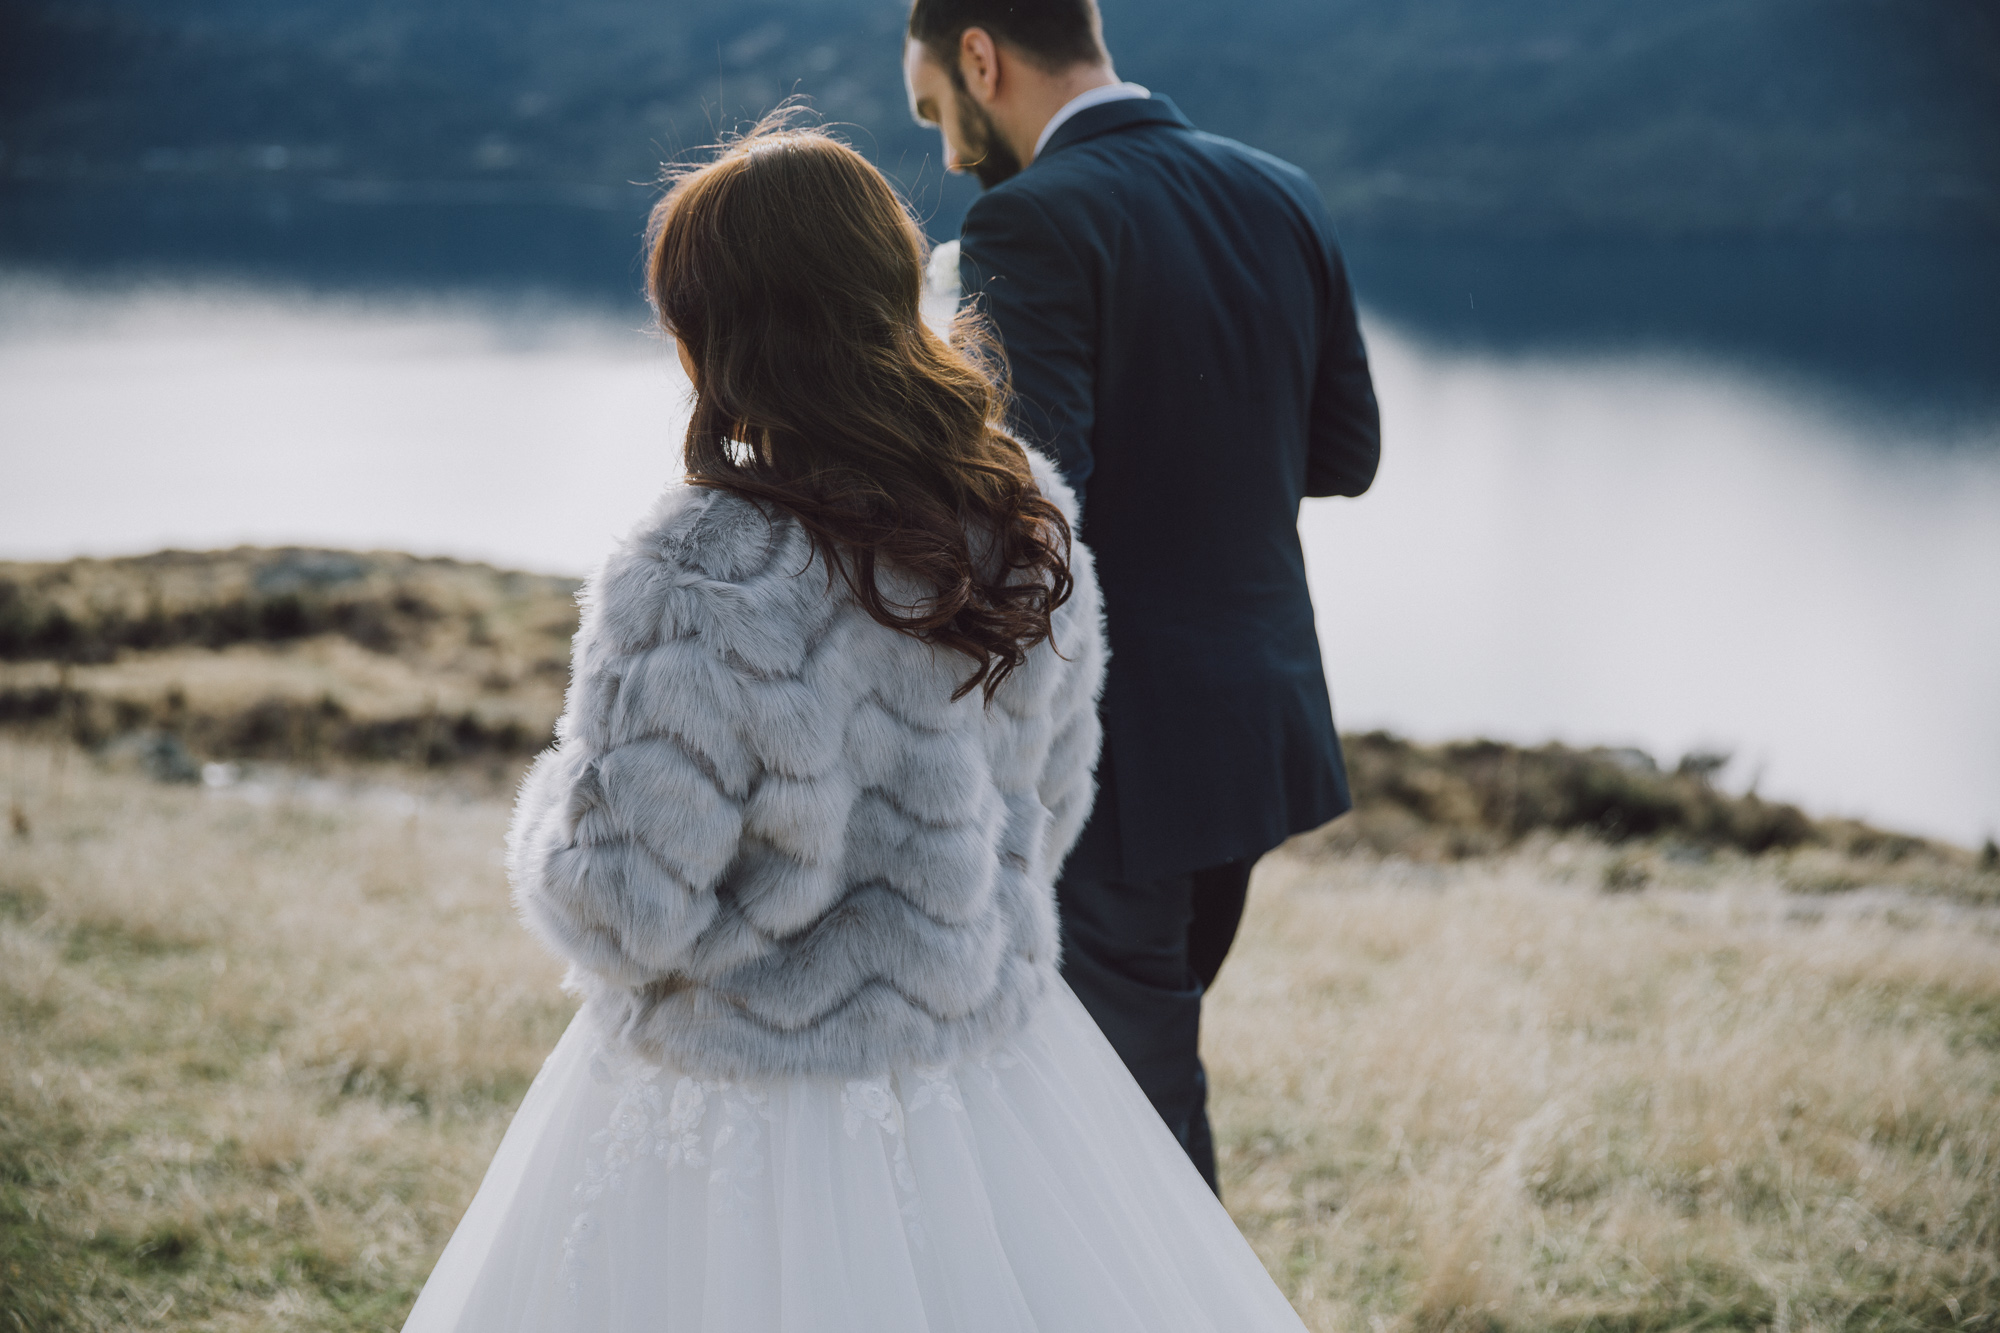 Heli wedding photos in winter in Queenstown NZ